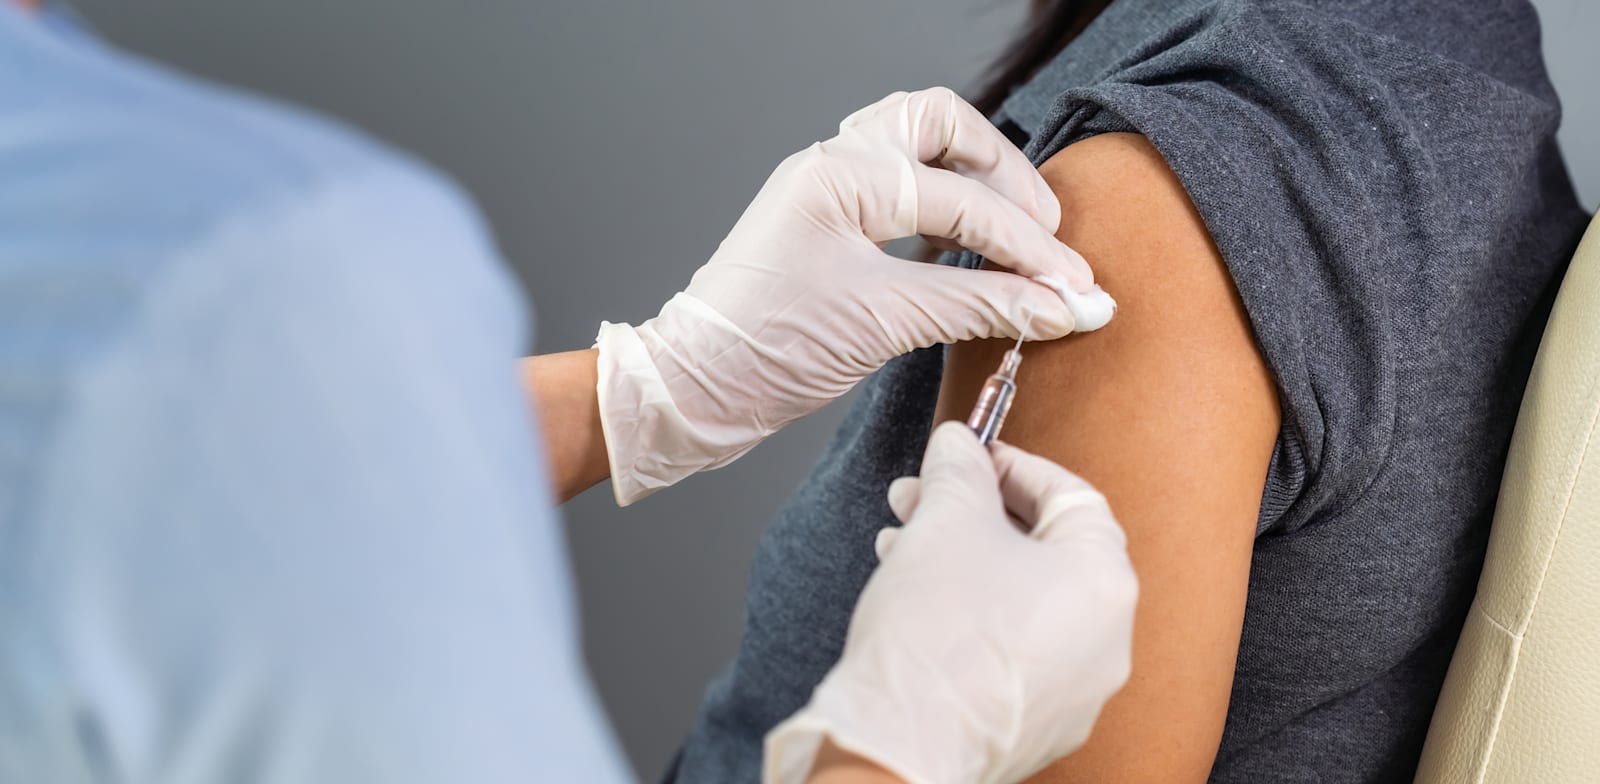 החיסון שבדרך. עד כמה הציבור מוכן להתחסן? / צילום: Shutterstock